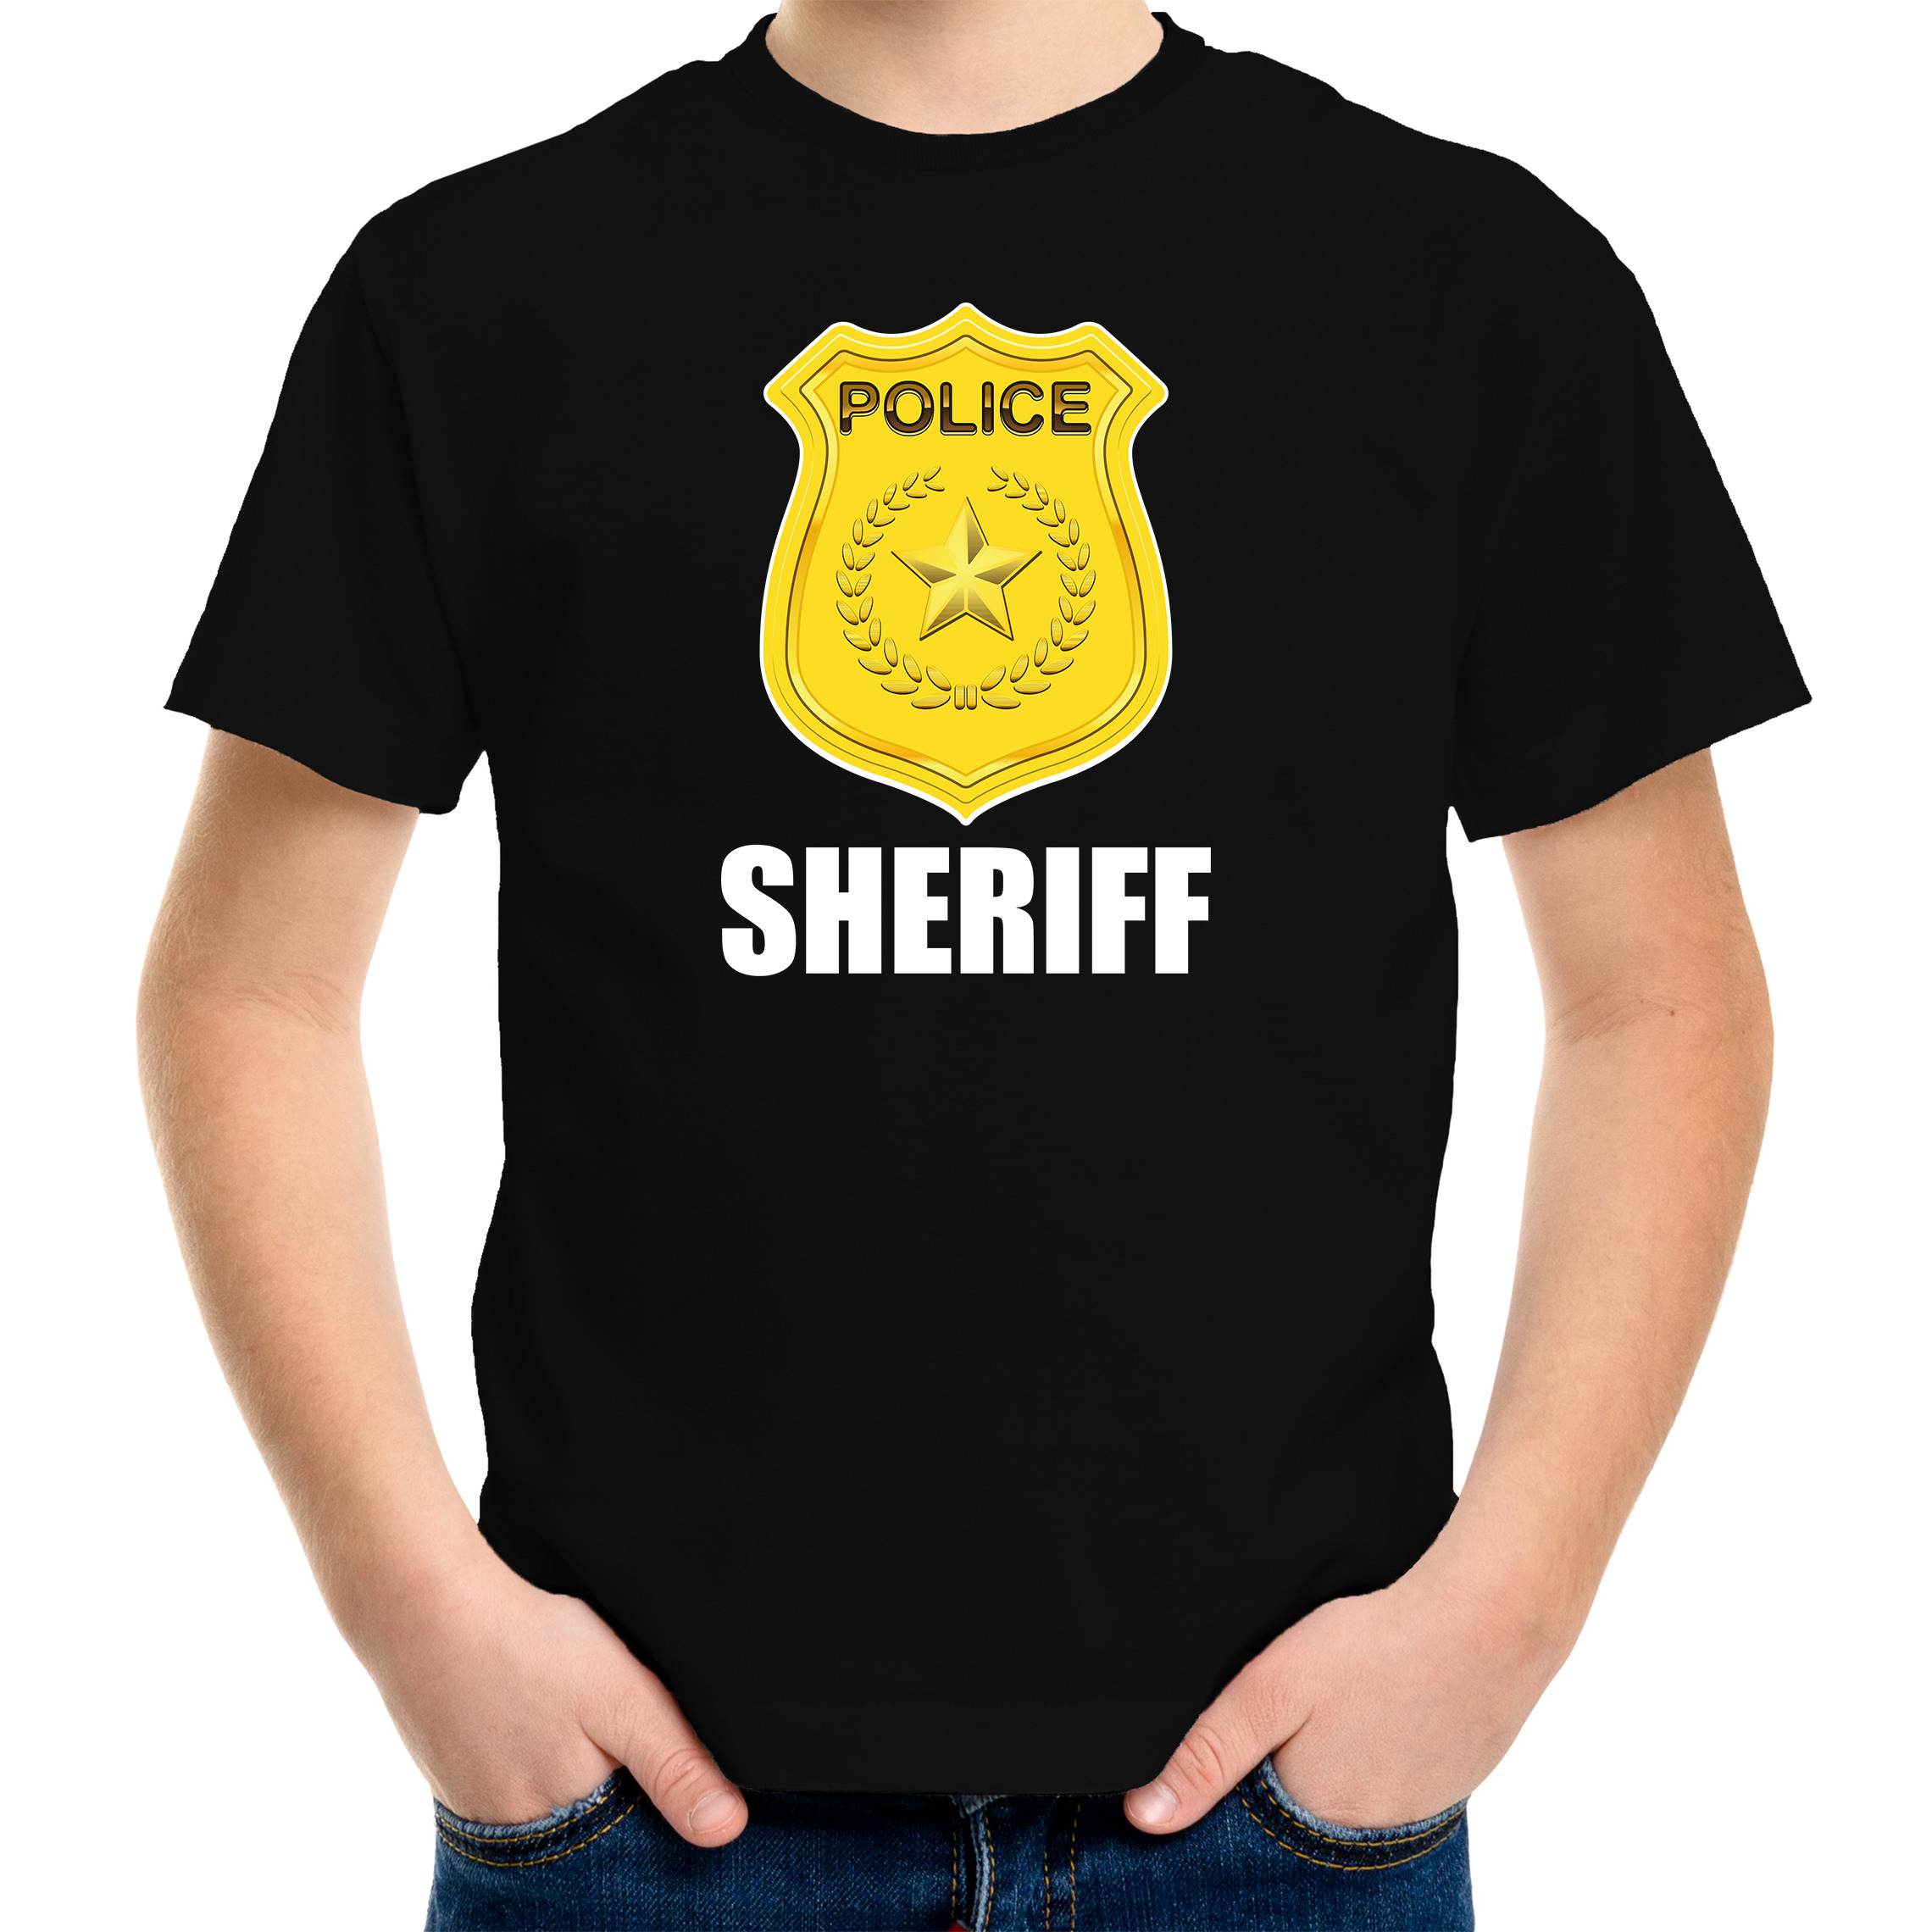 Sheriff police / politie embleem t-shirt zwart voor kinderen